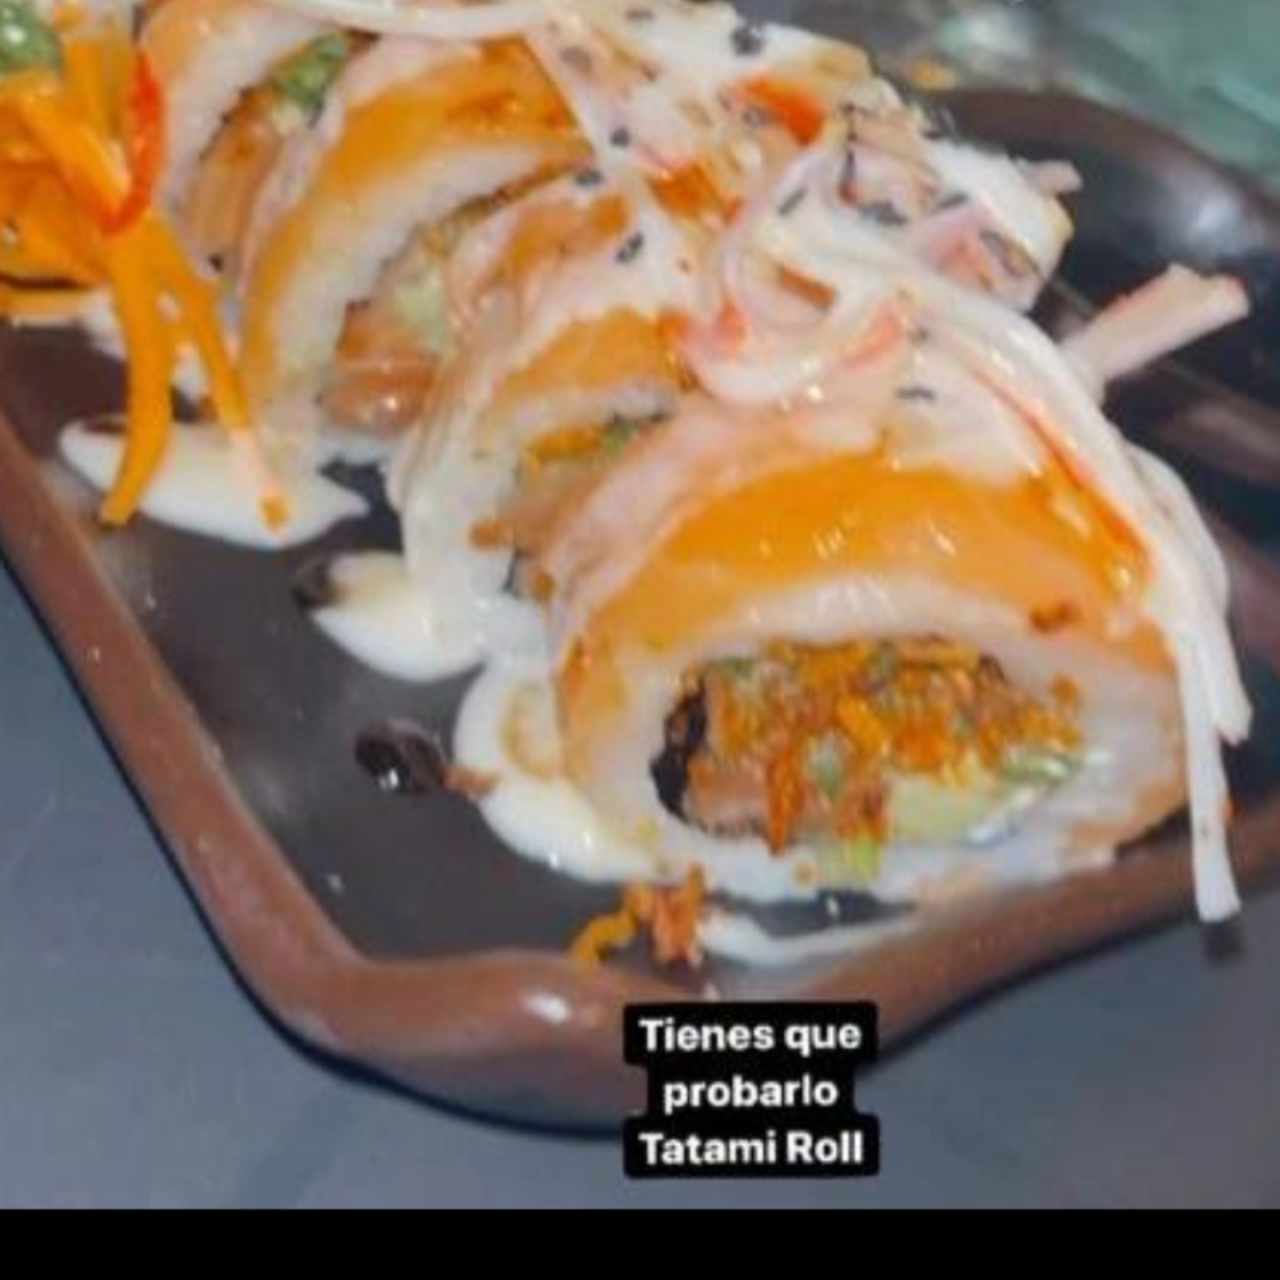 Tatami Roll